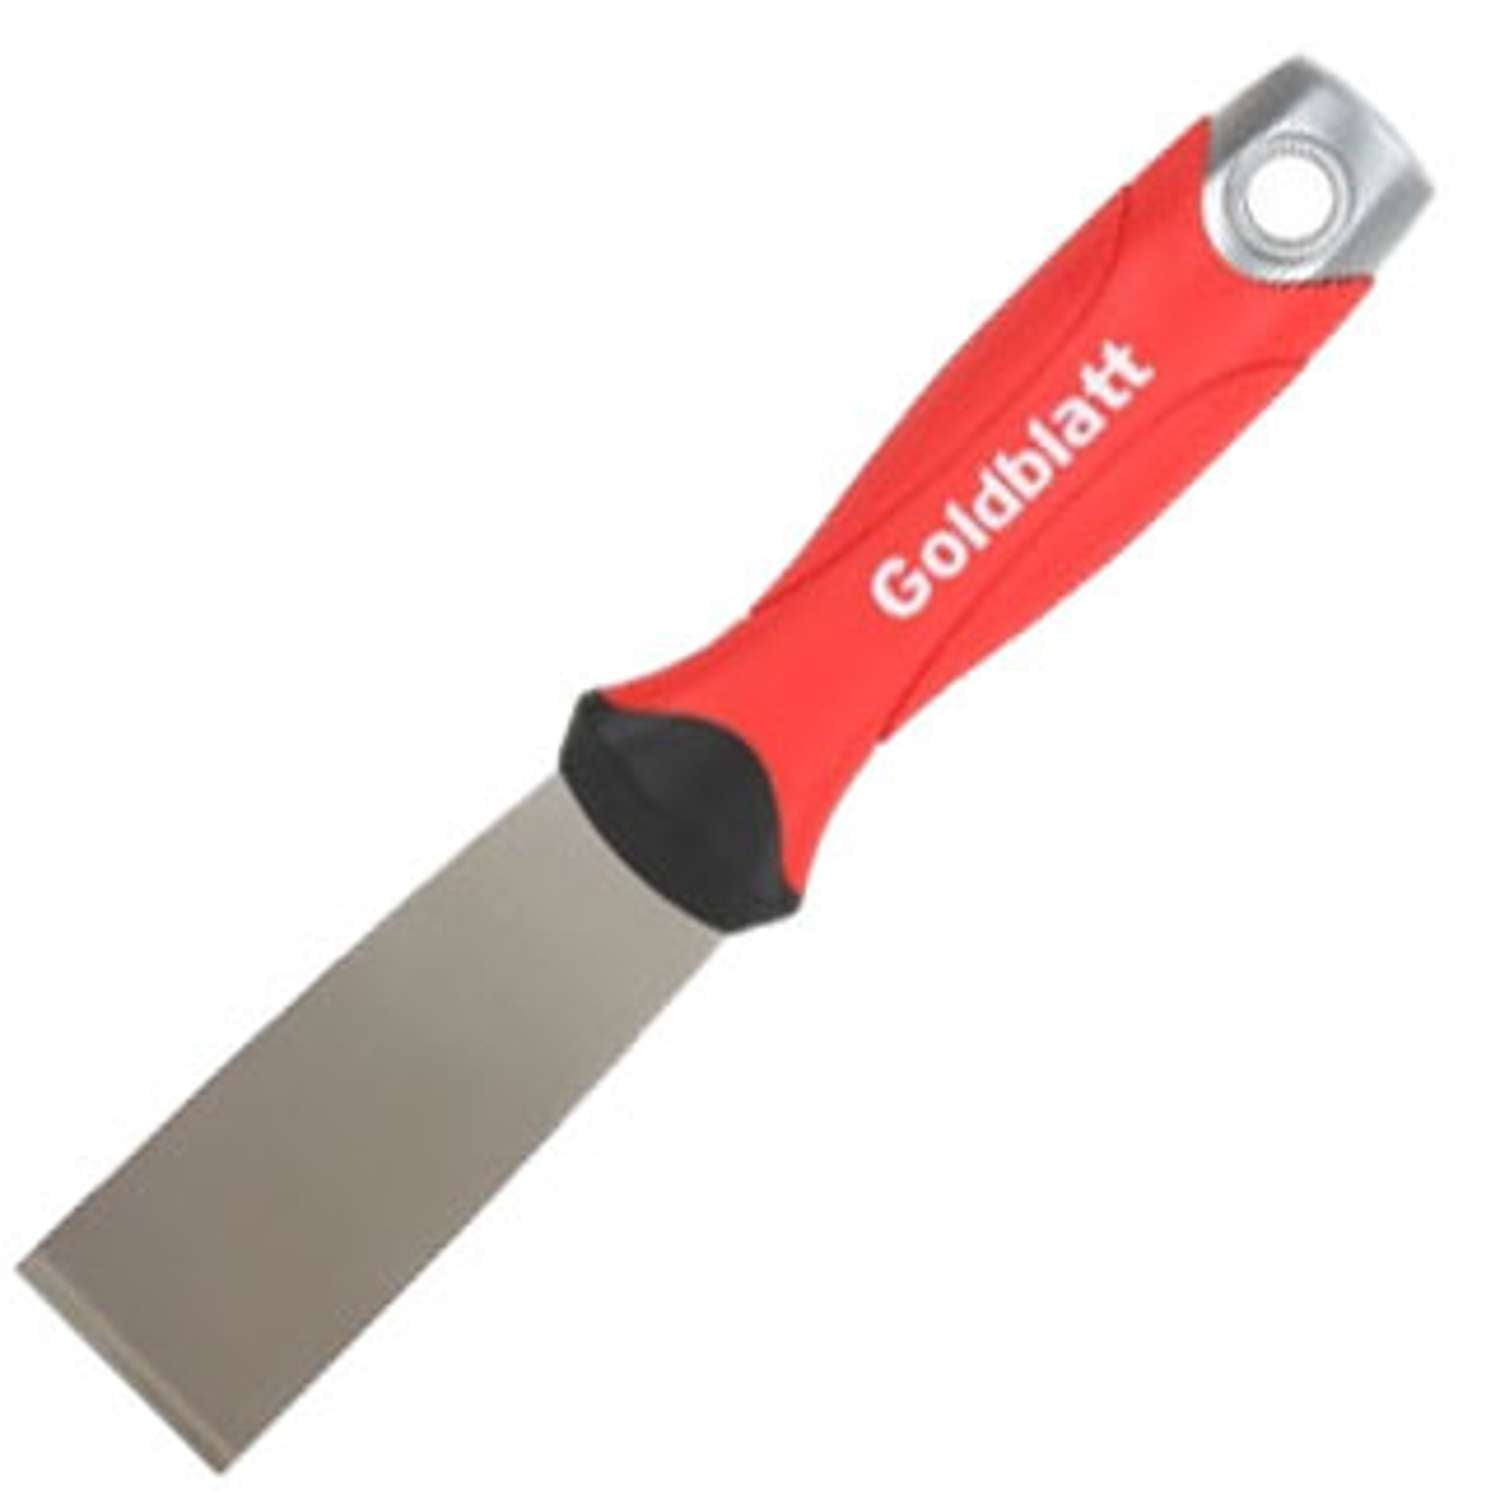 Billede af Goldblatt Stiv spartel/skraber soft grip med hammer ende 32 mm HEAVY DUTY Stift